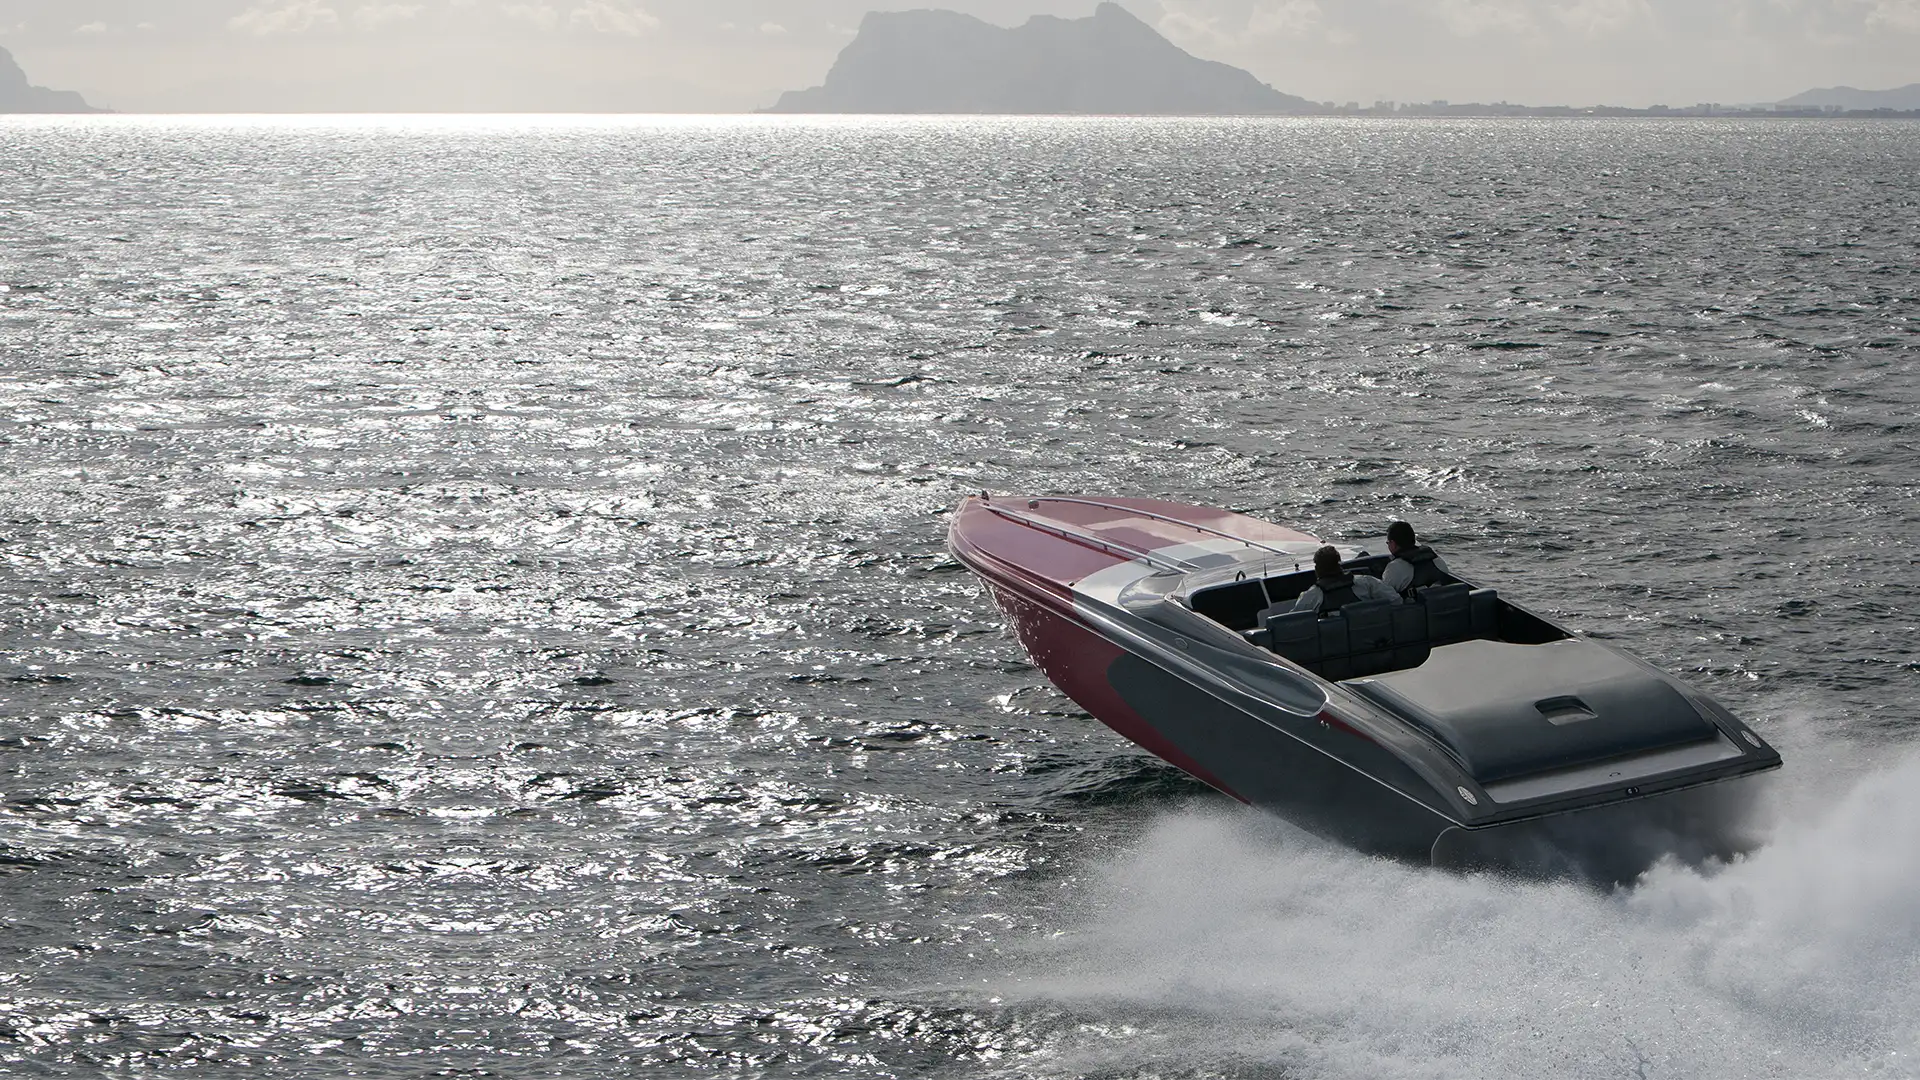 A speed boat in open water